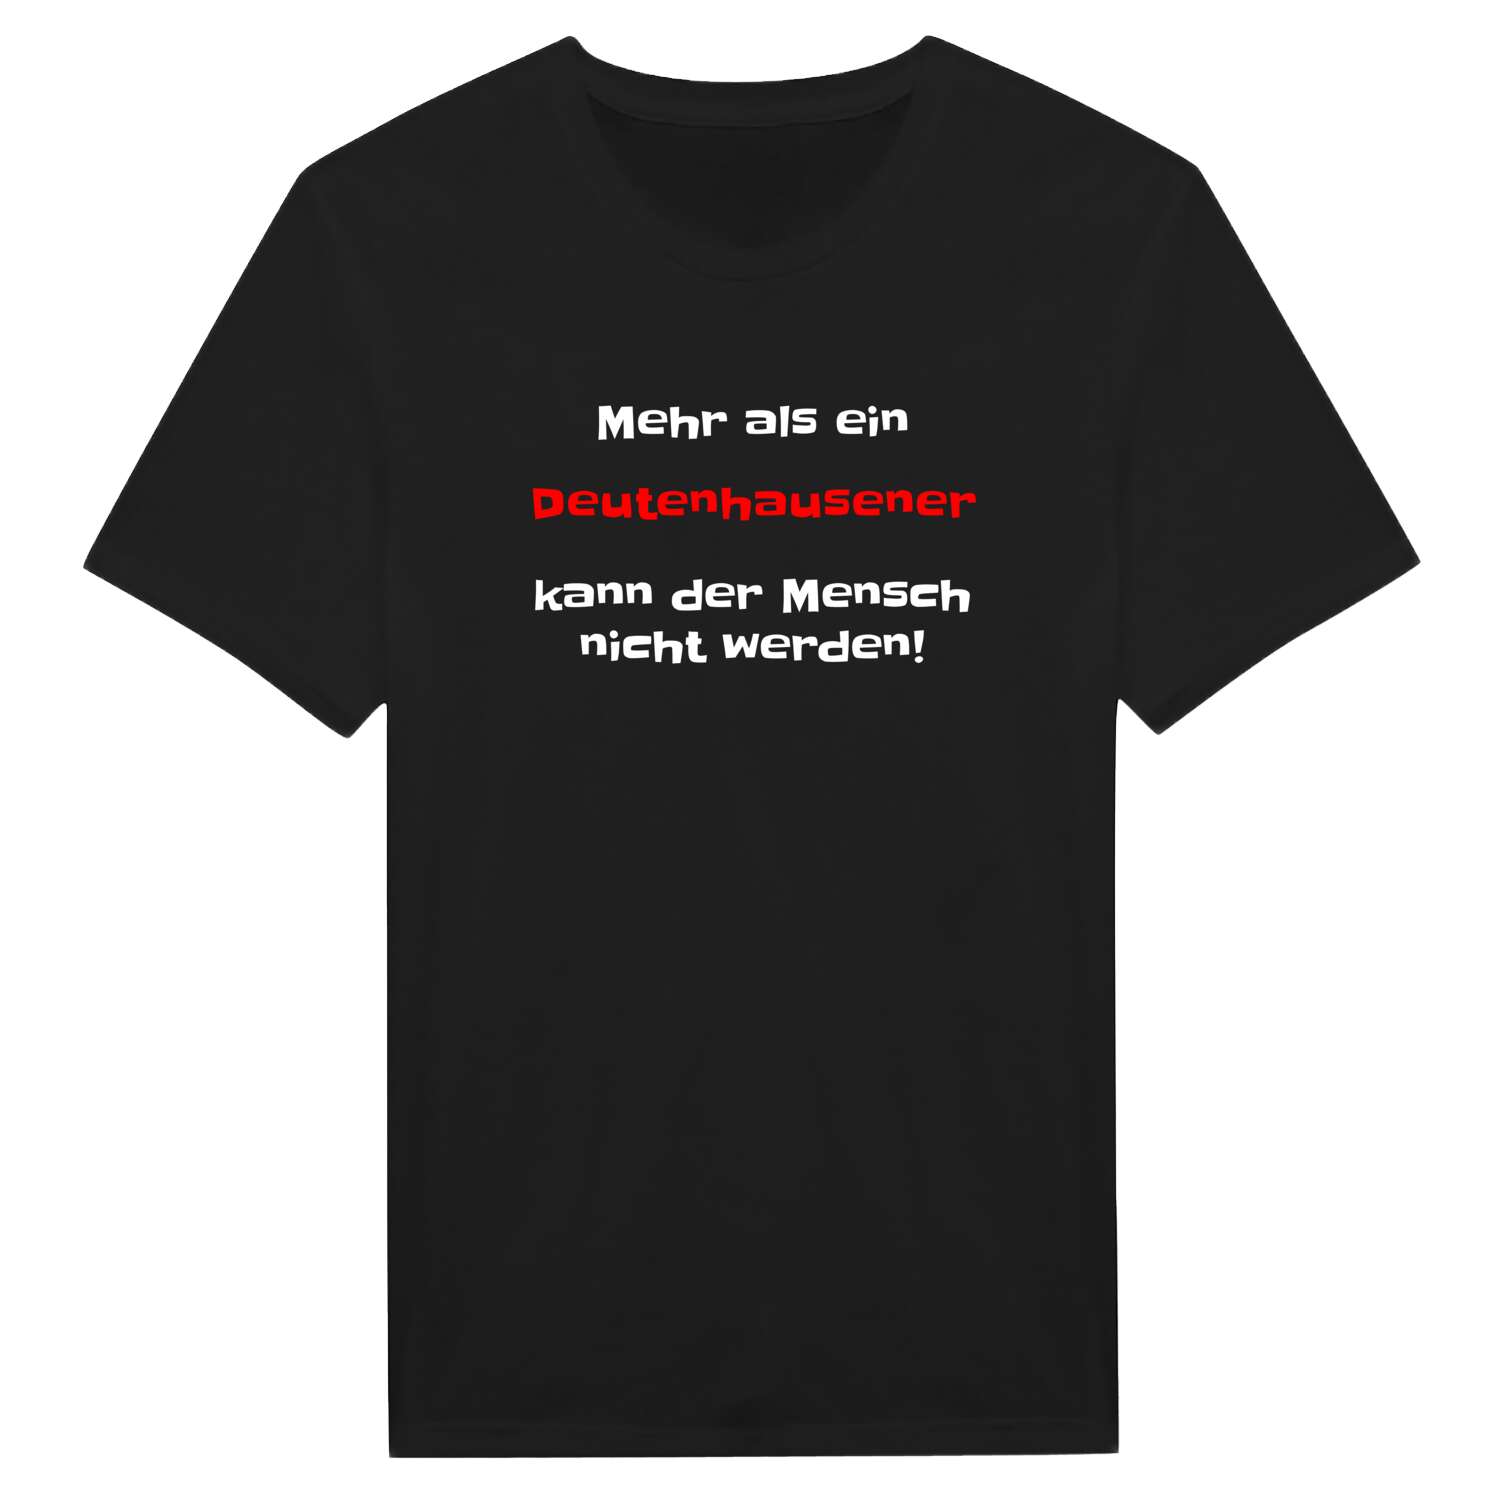 Deutenhausen T-Shirt »Mehr als ein«